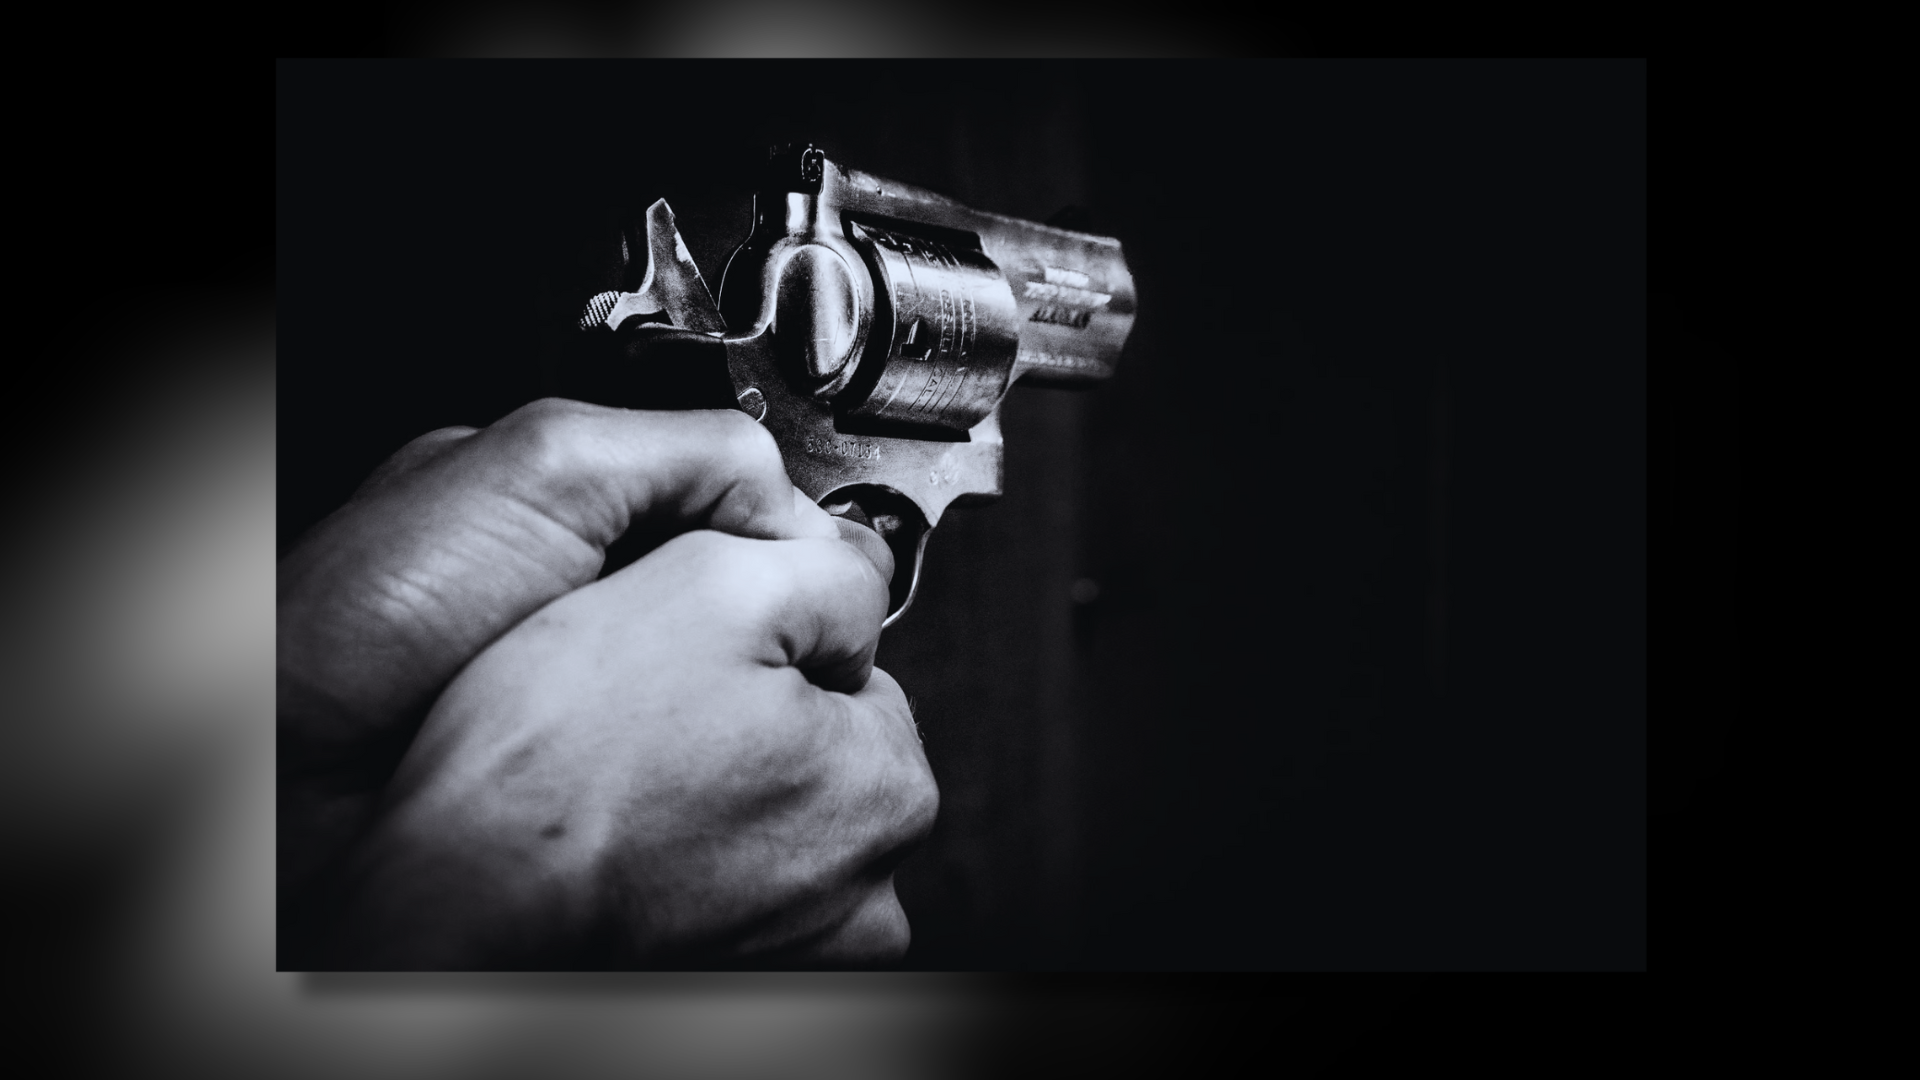 Gurugram Tragedy: Ex-Serviceman Fatally Shot, Police Investigate